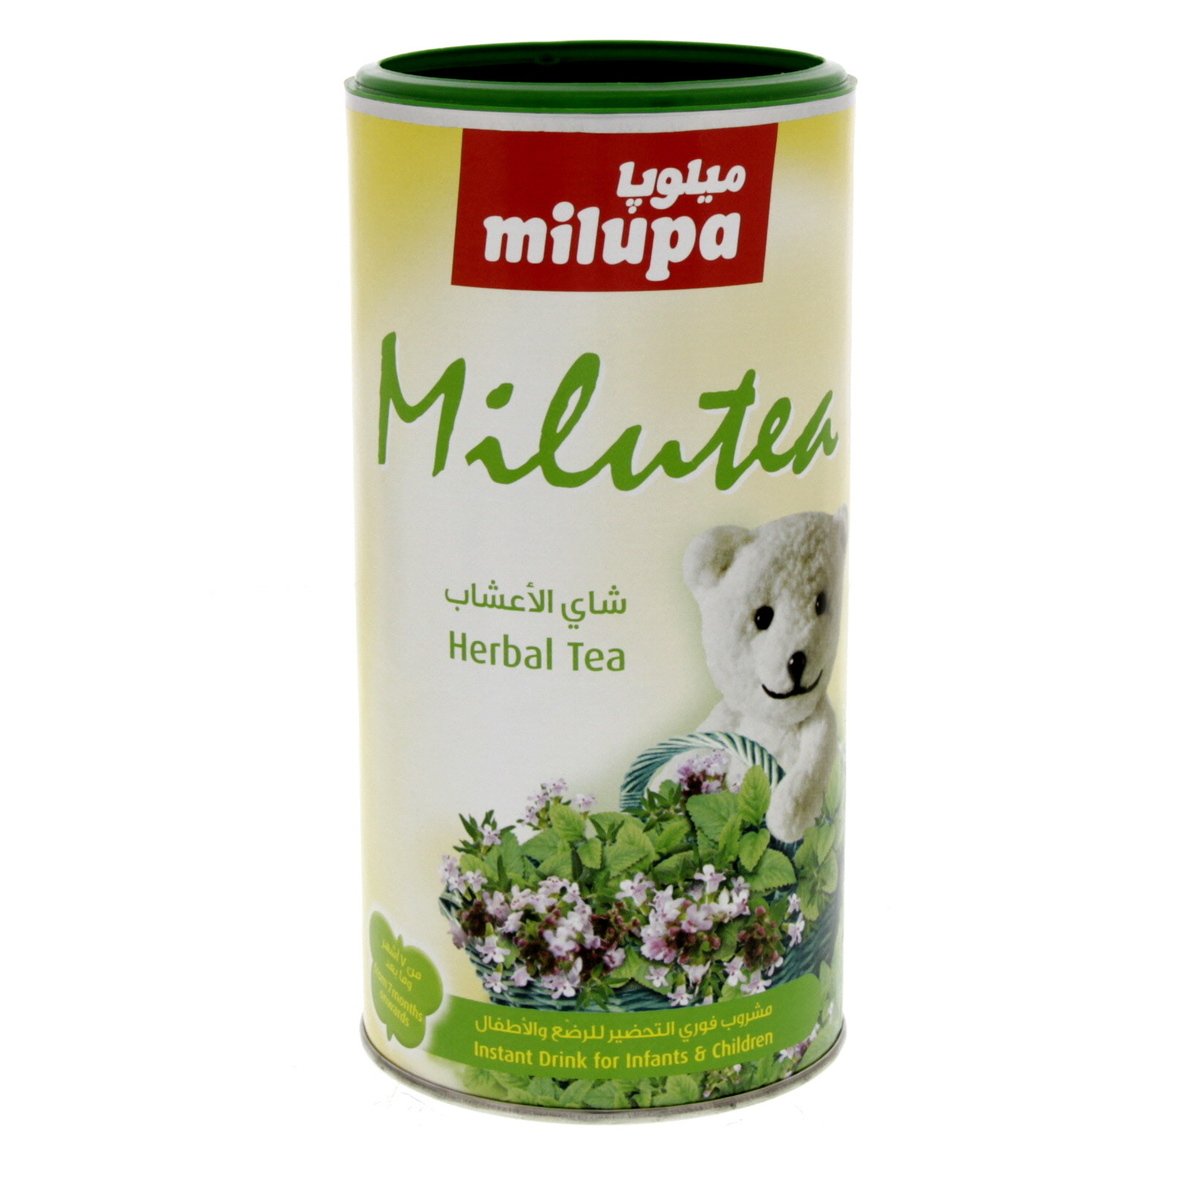 ميلوبا شاي عشبي سريع التحضير للأطفال 200 جم